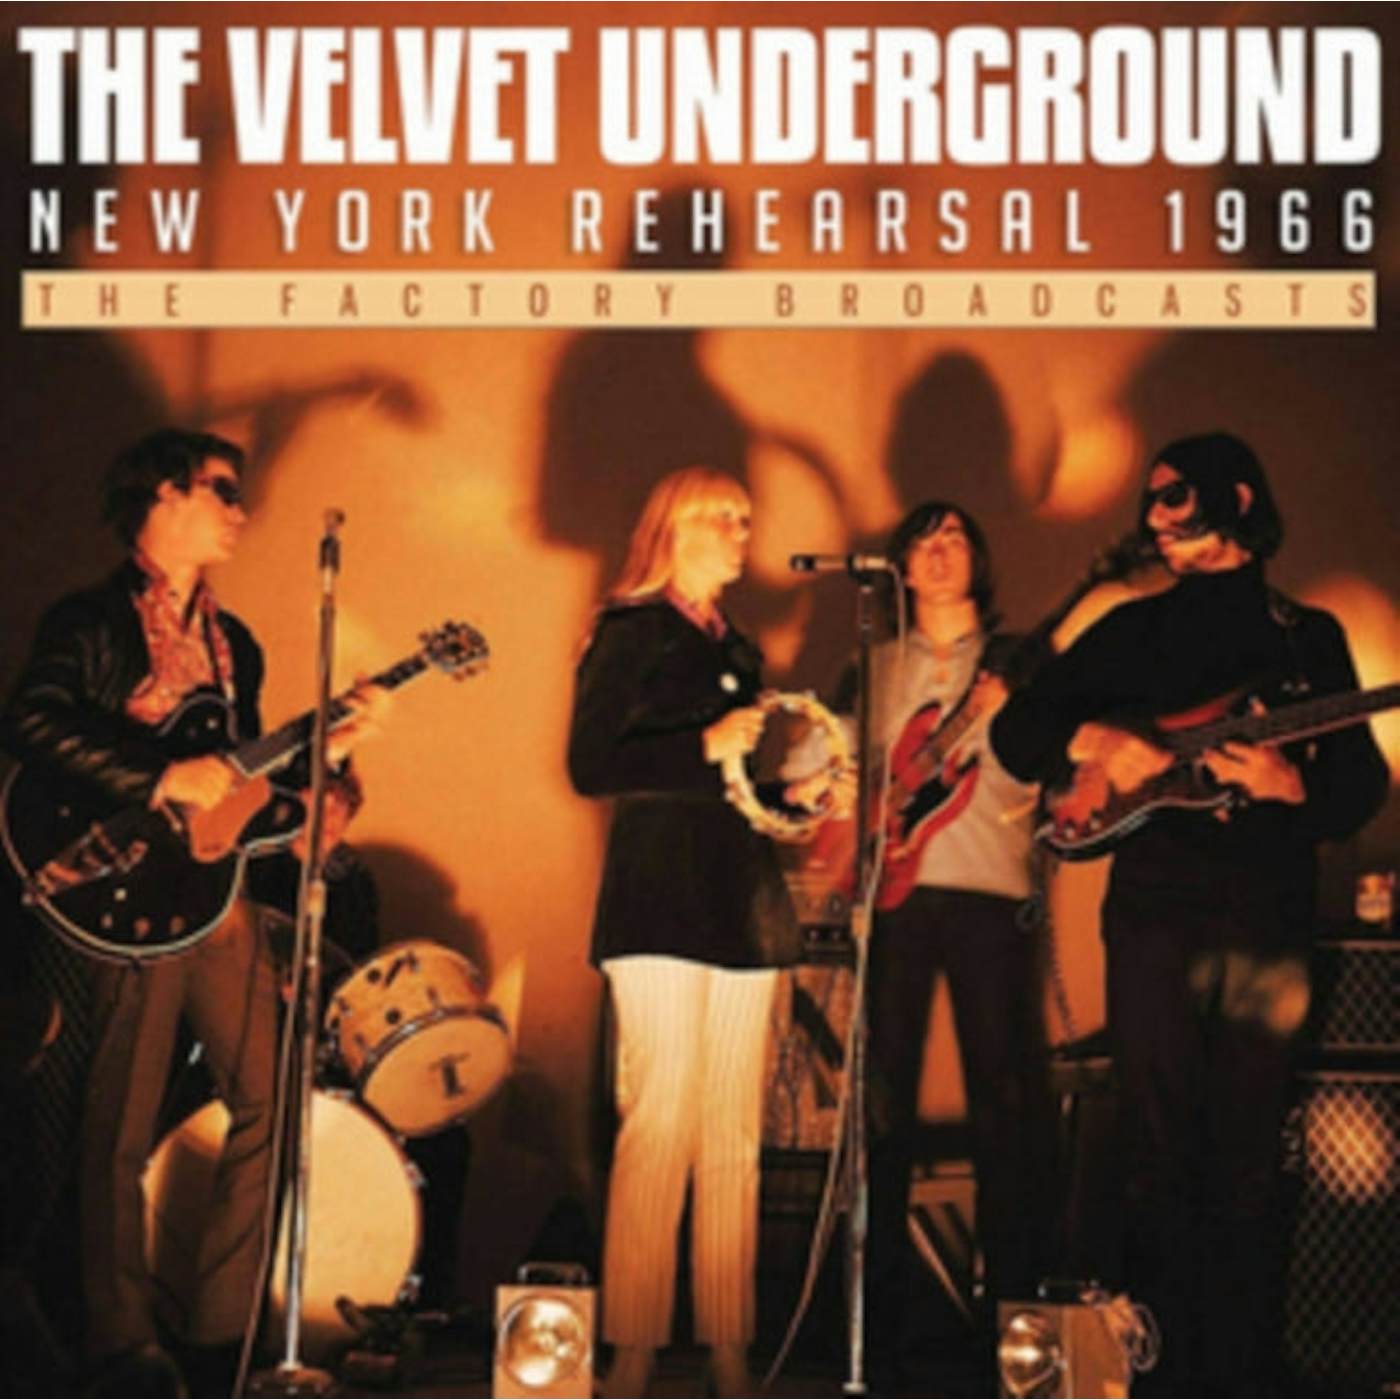 The Velvet Underground CD - New York Rehearsal 1966